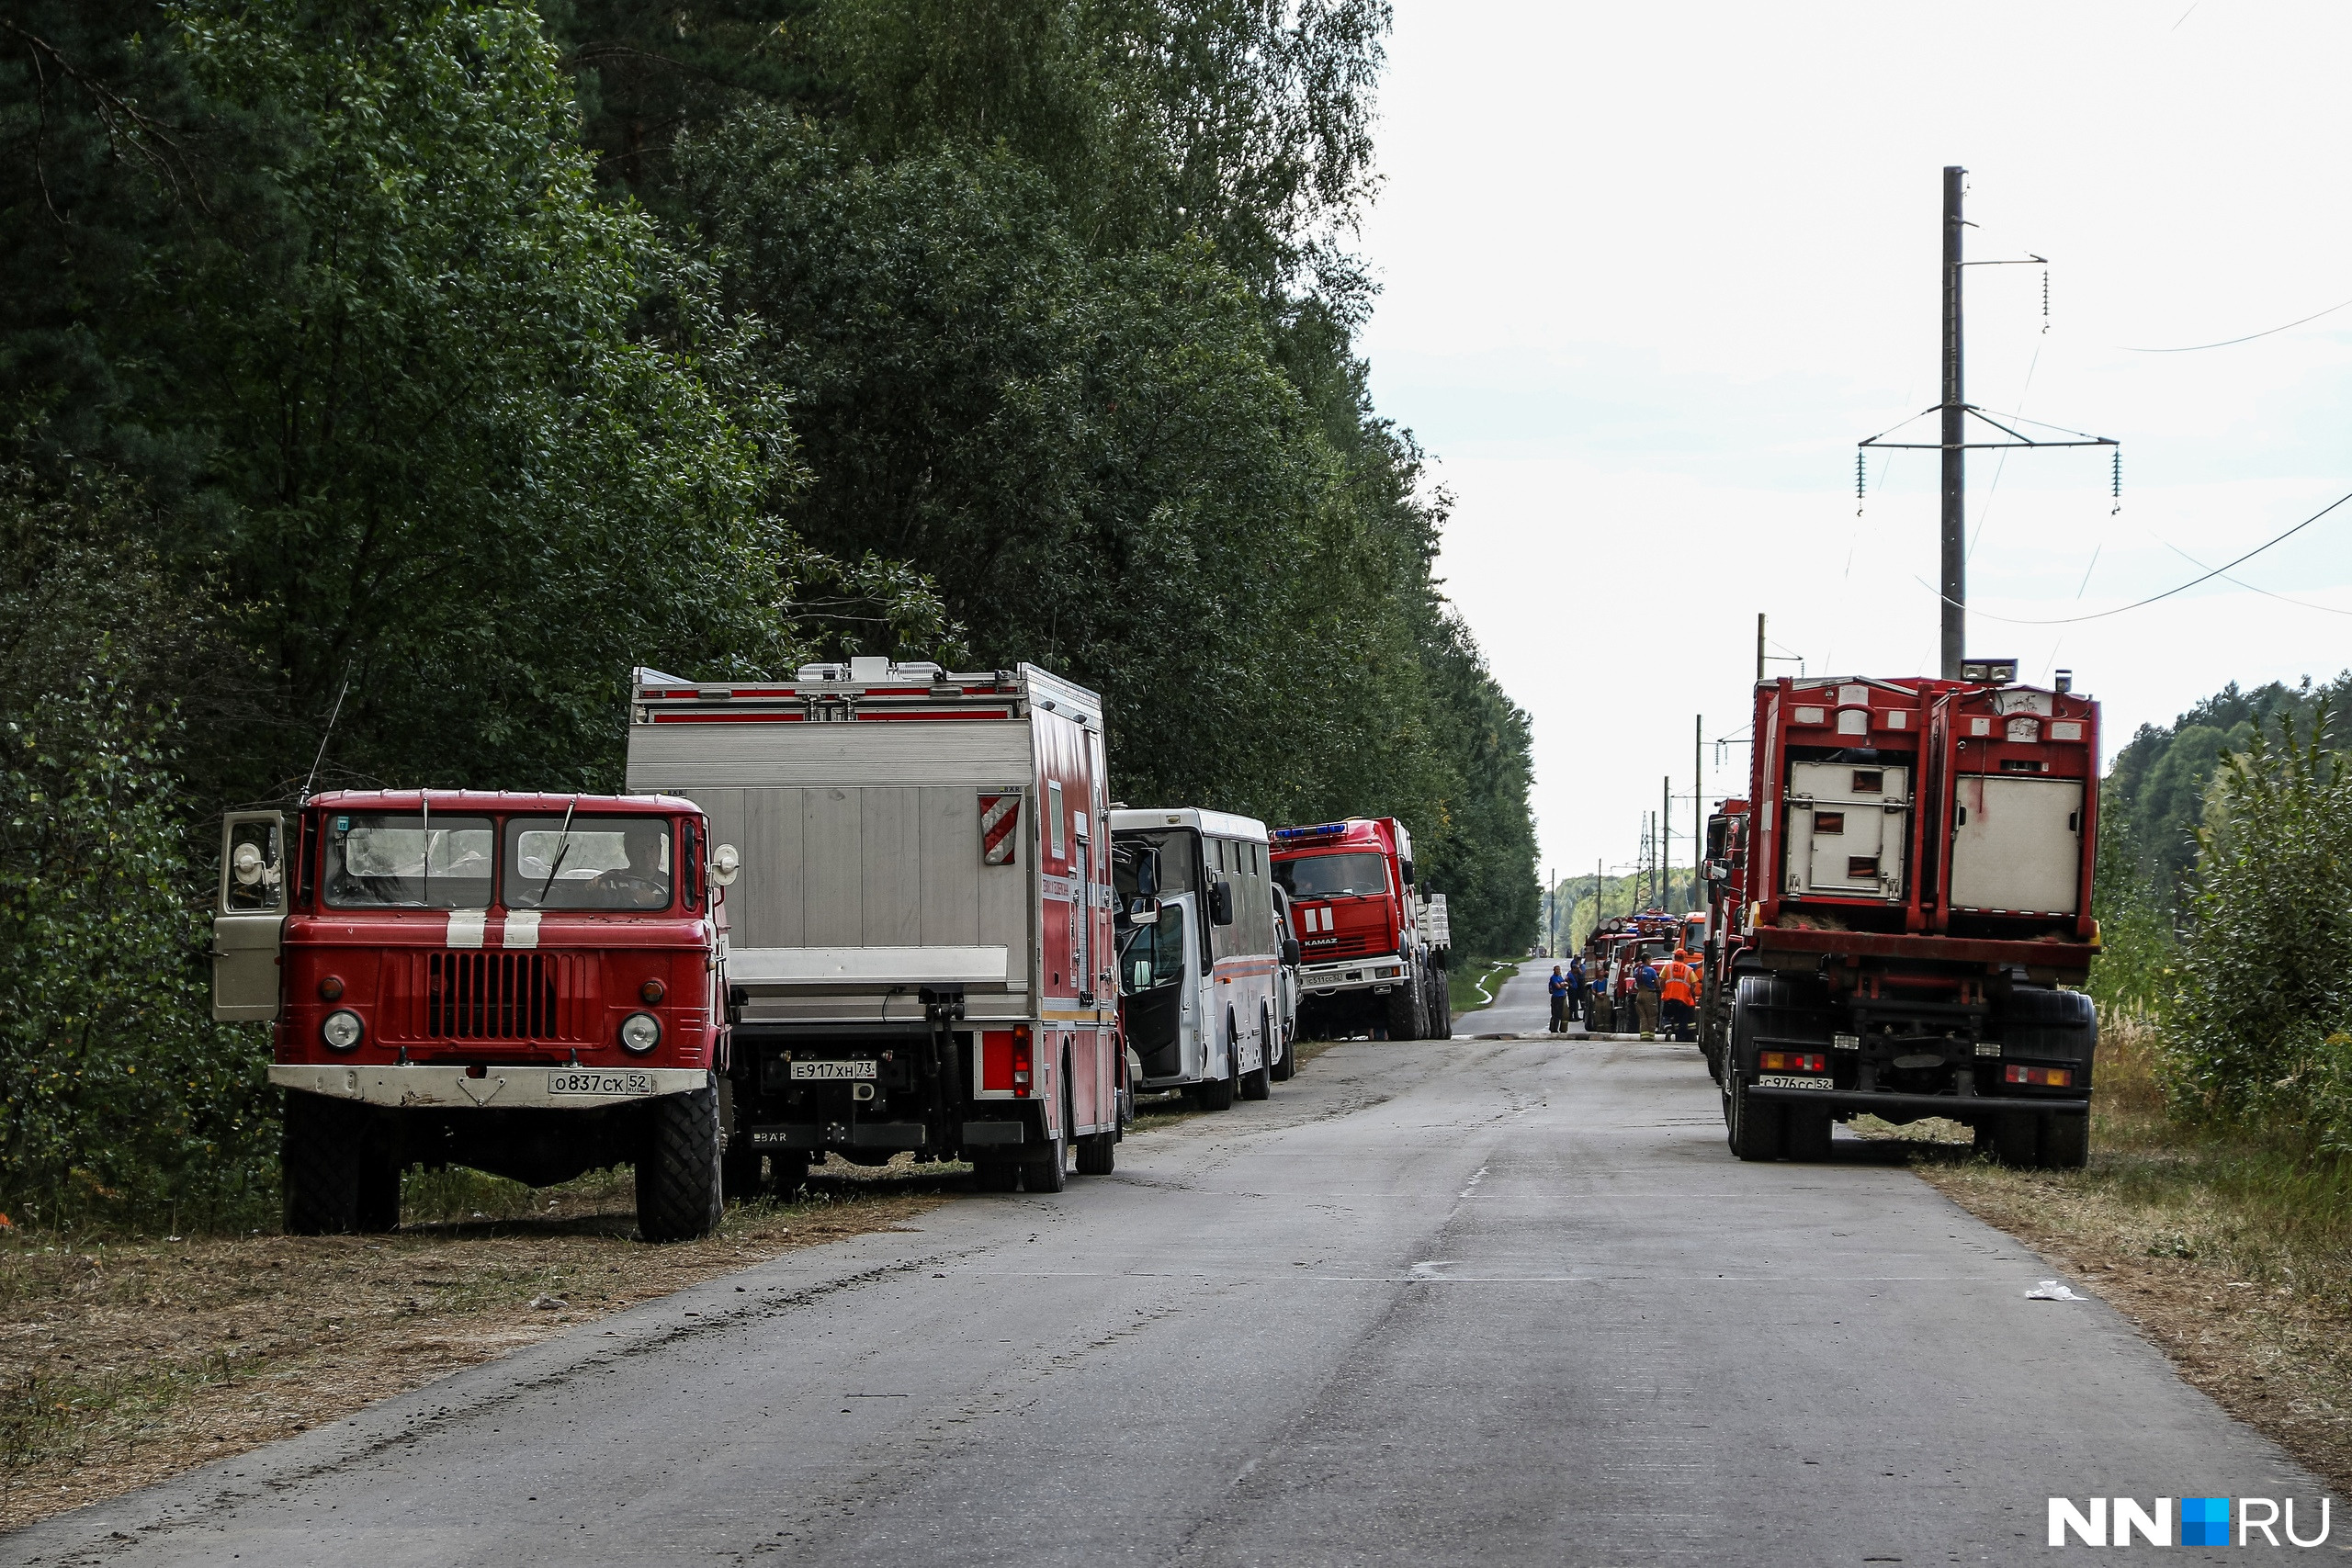 Около 90 сотрудников МЧС 8 сентября покинули зону пожара. Там до сих пор остаются люди, которые проливают тлеющие очаги.